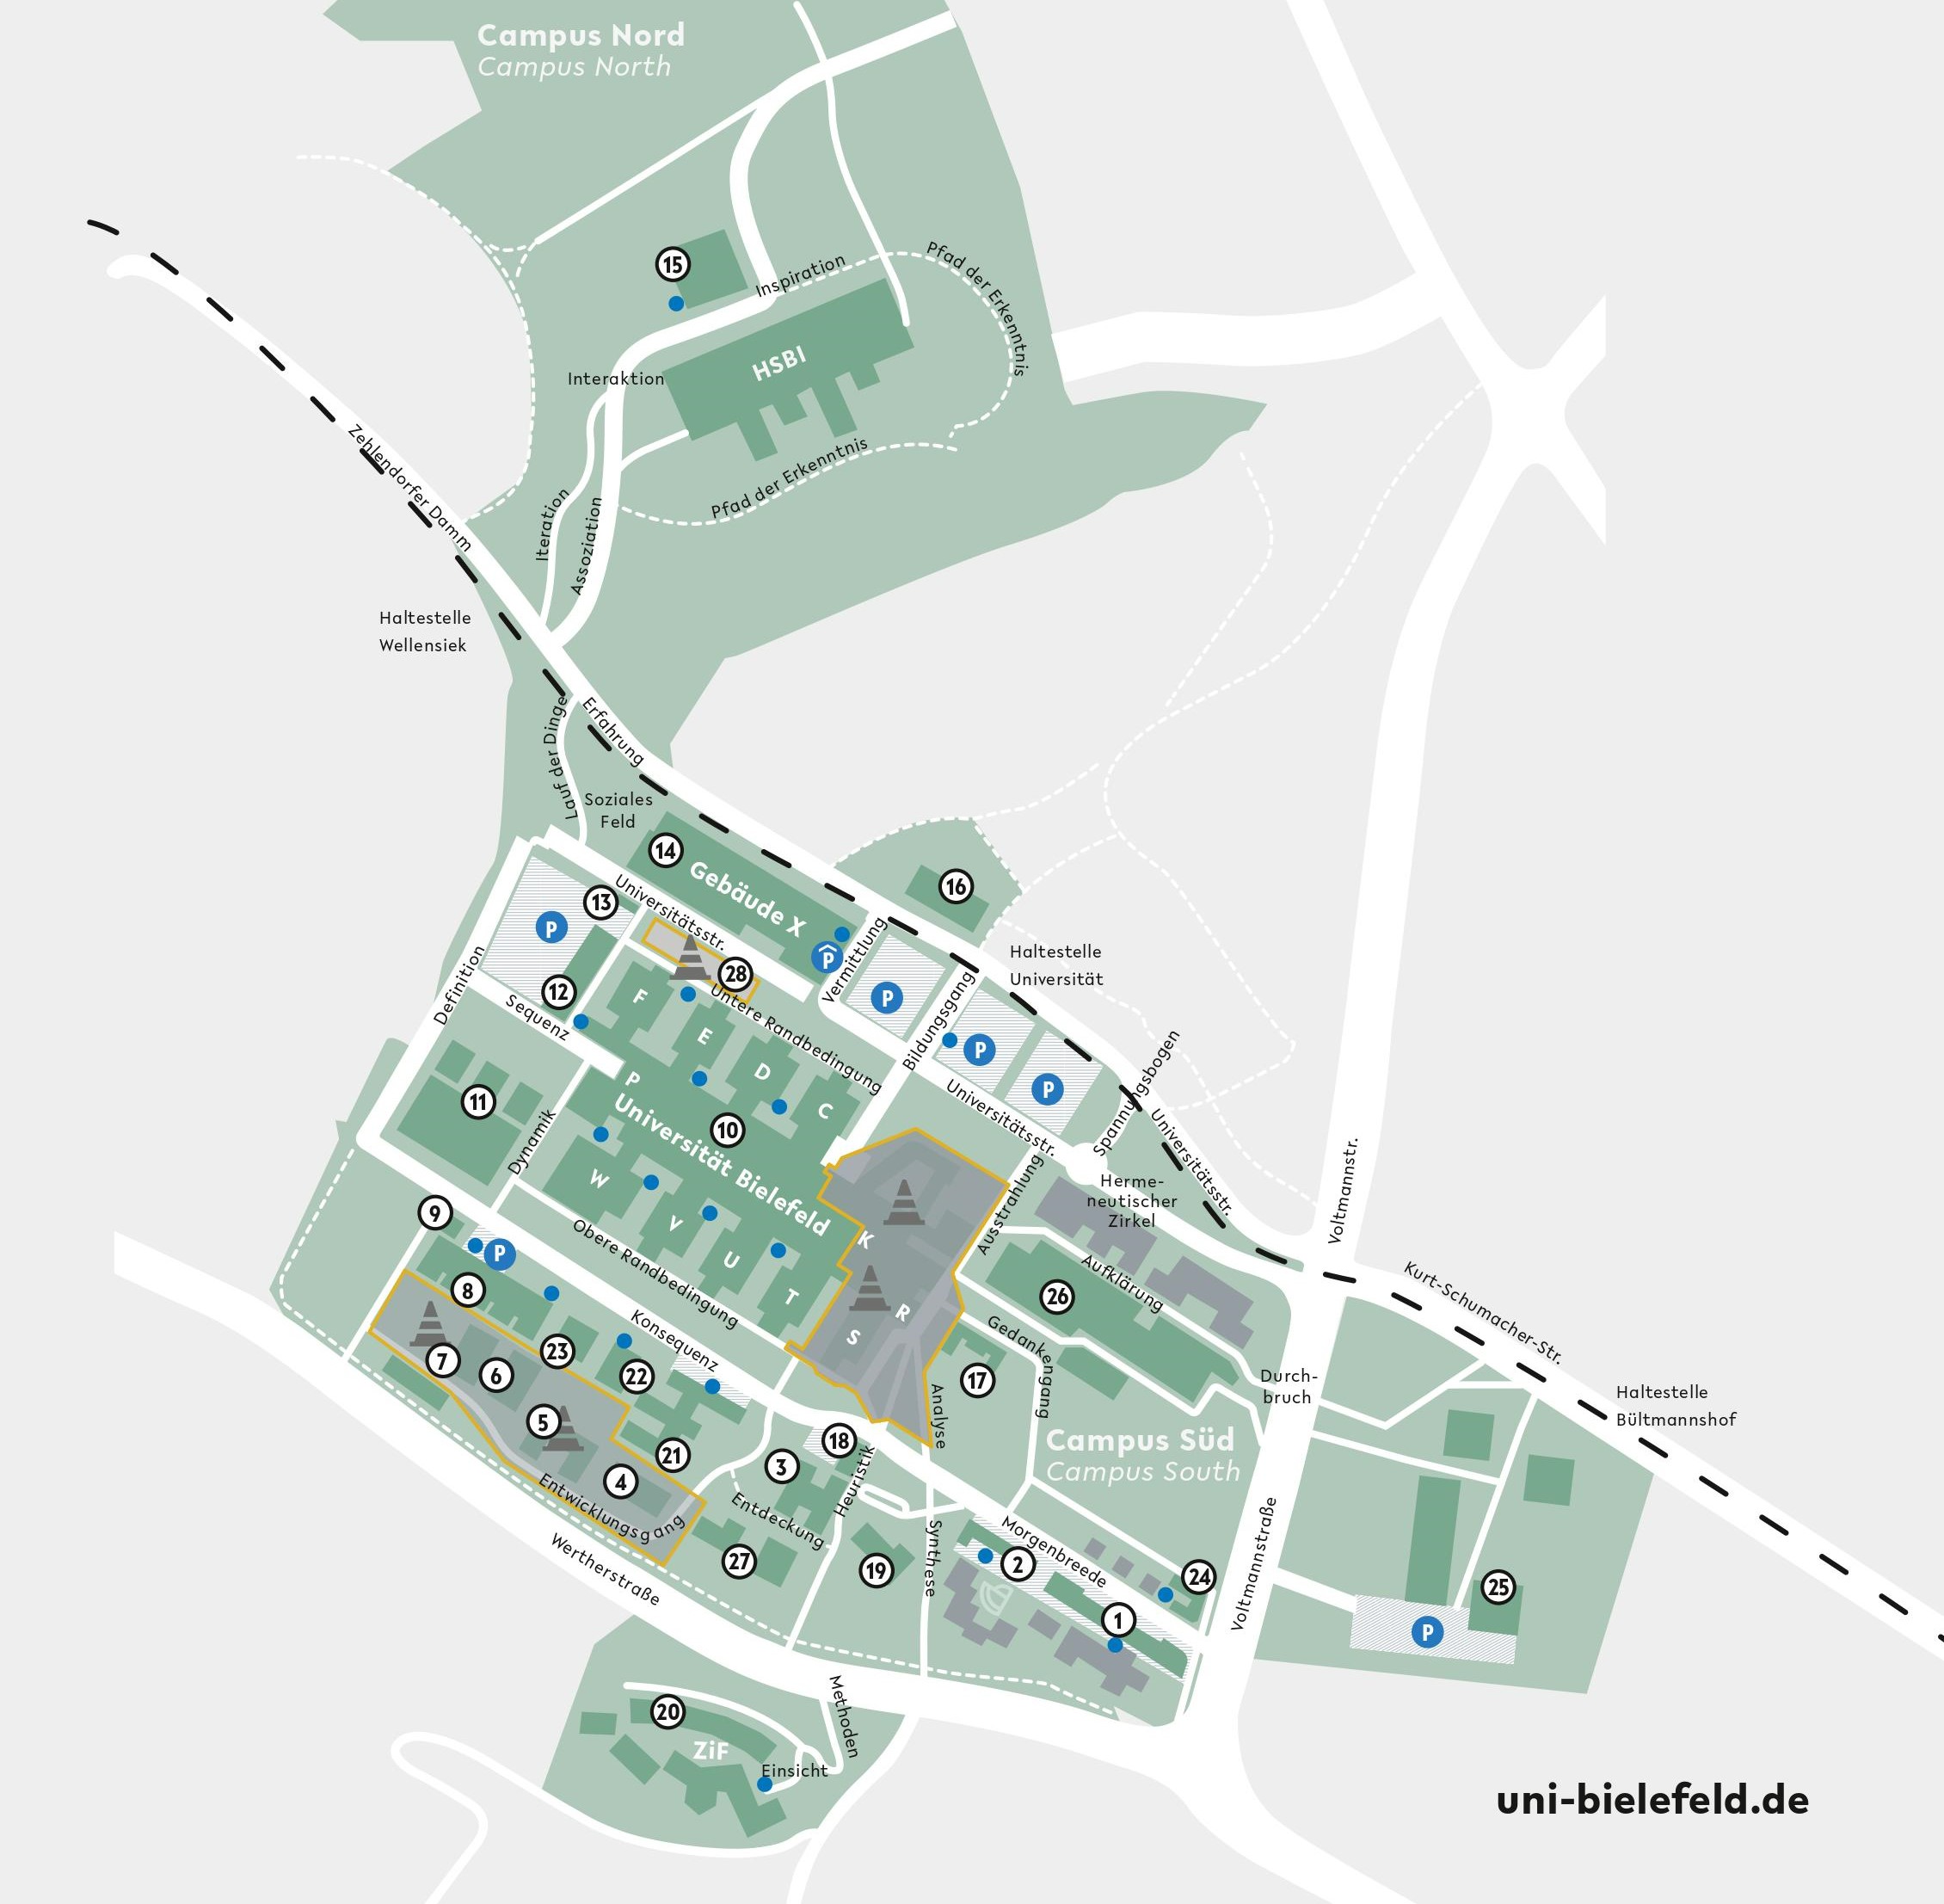 Karte vom Uni Campus mit allen zugehörigen Gebäuden